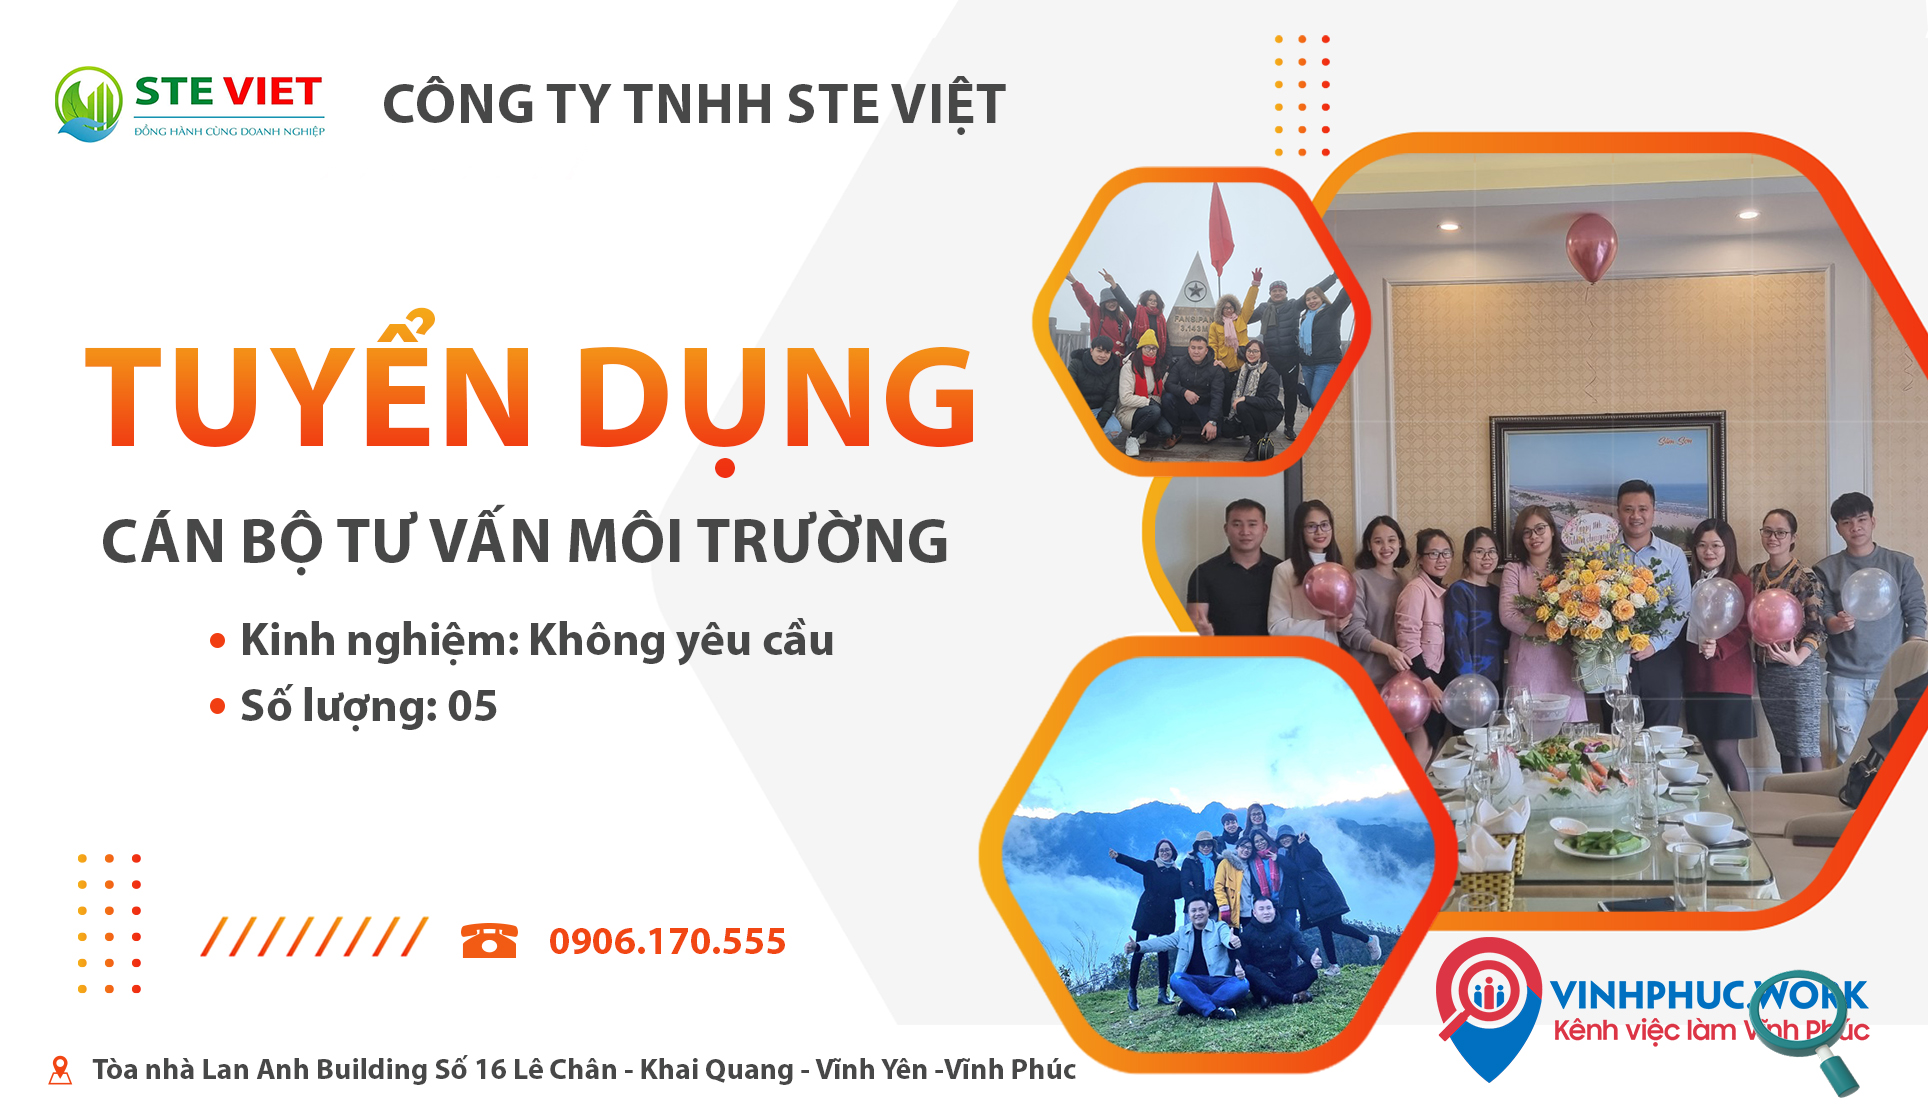 Cong Ty Tnhh Ste Viet Tuyen Can Bo Tu Van Moi Truong 8